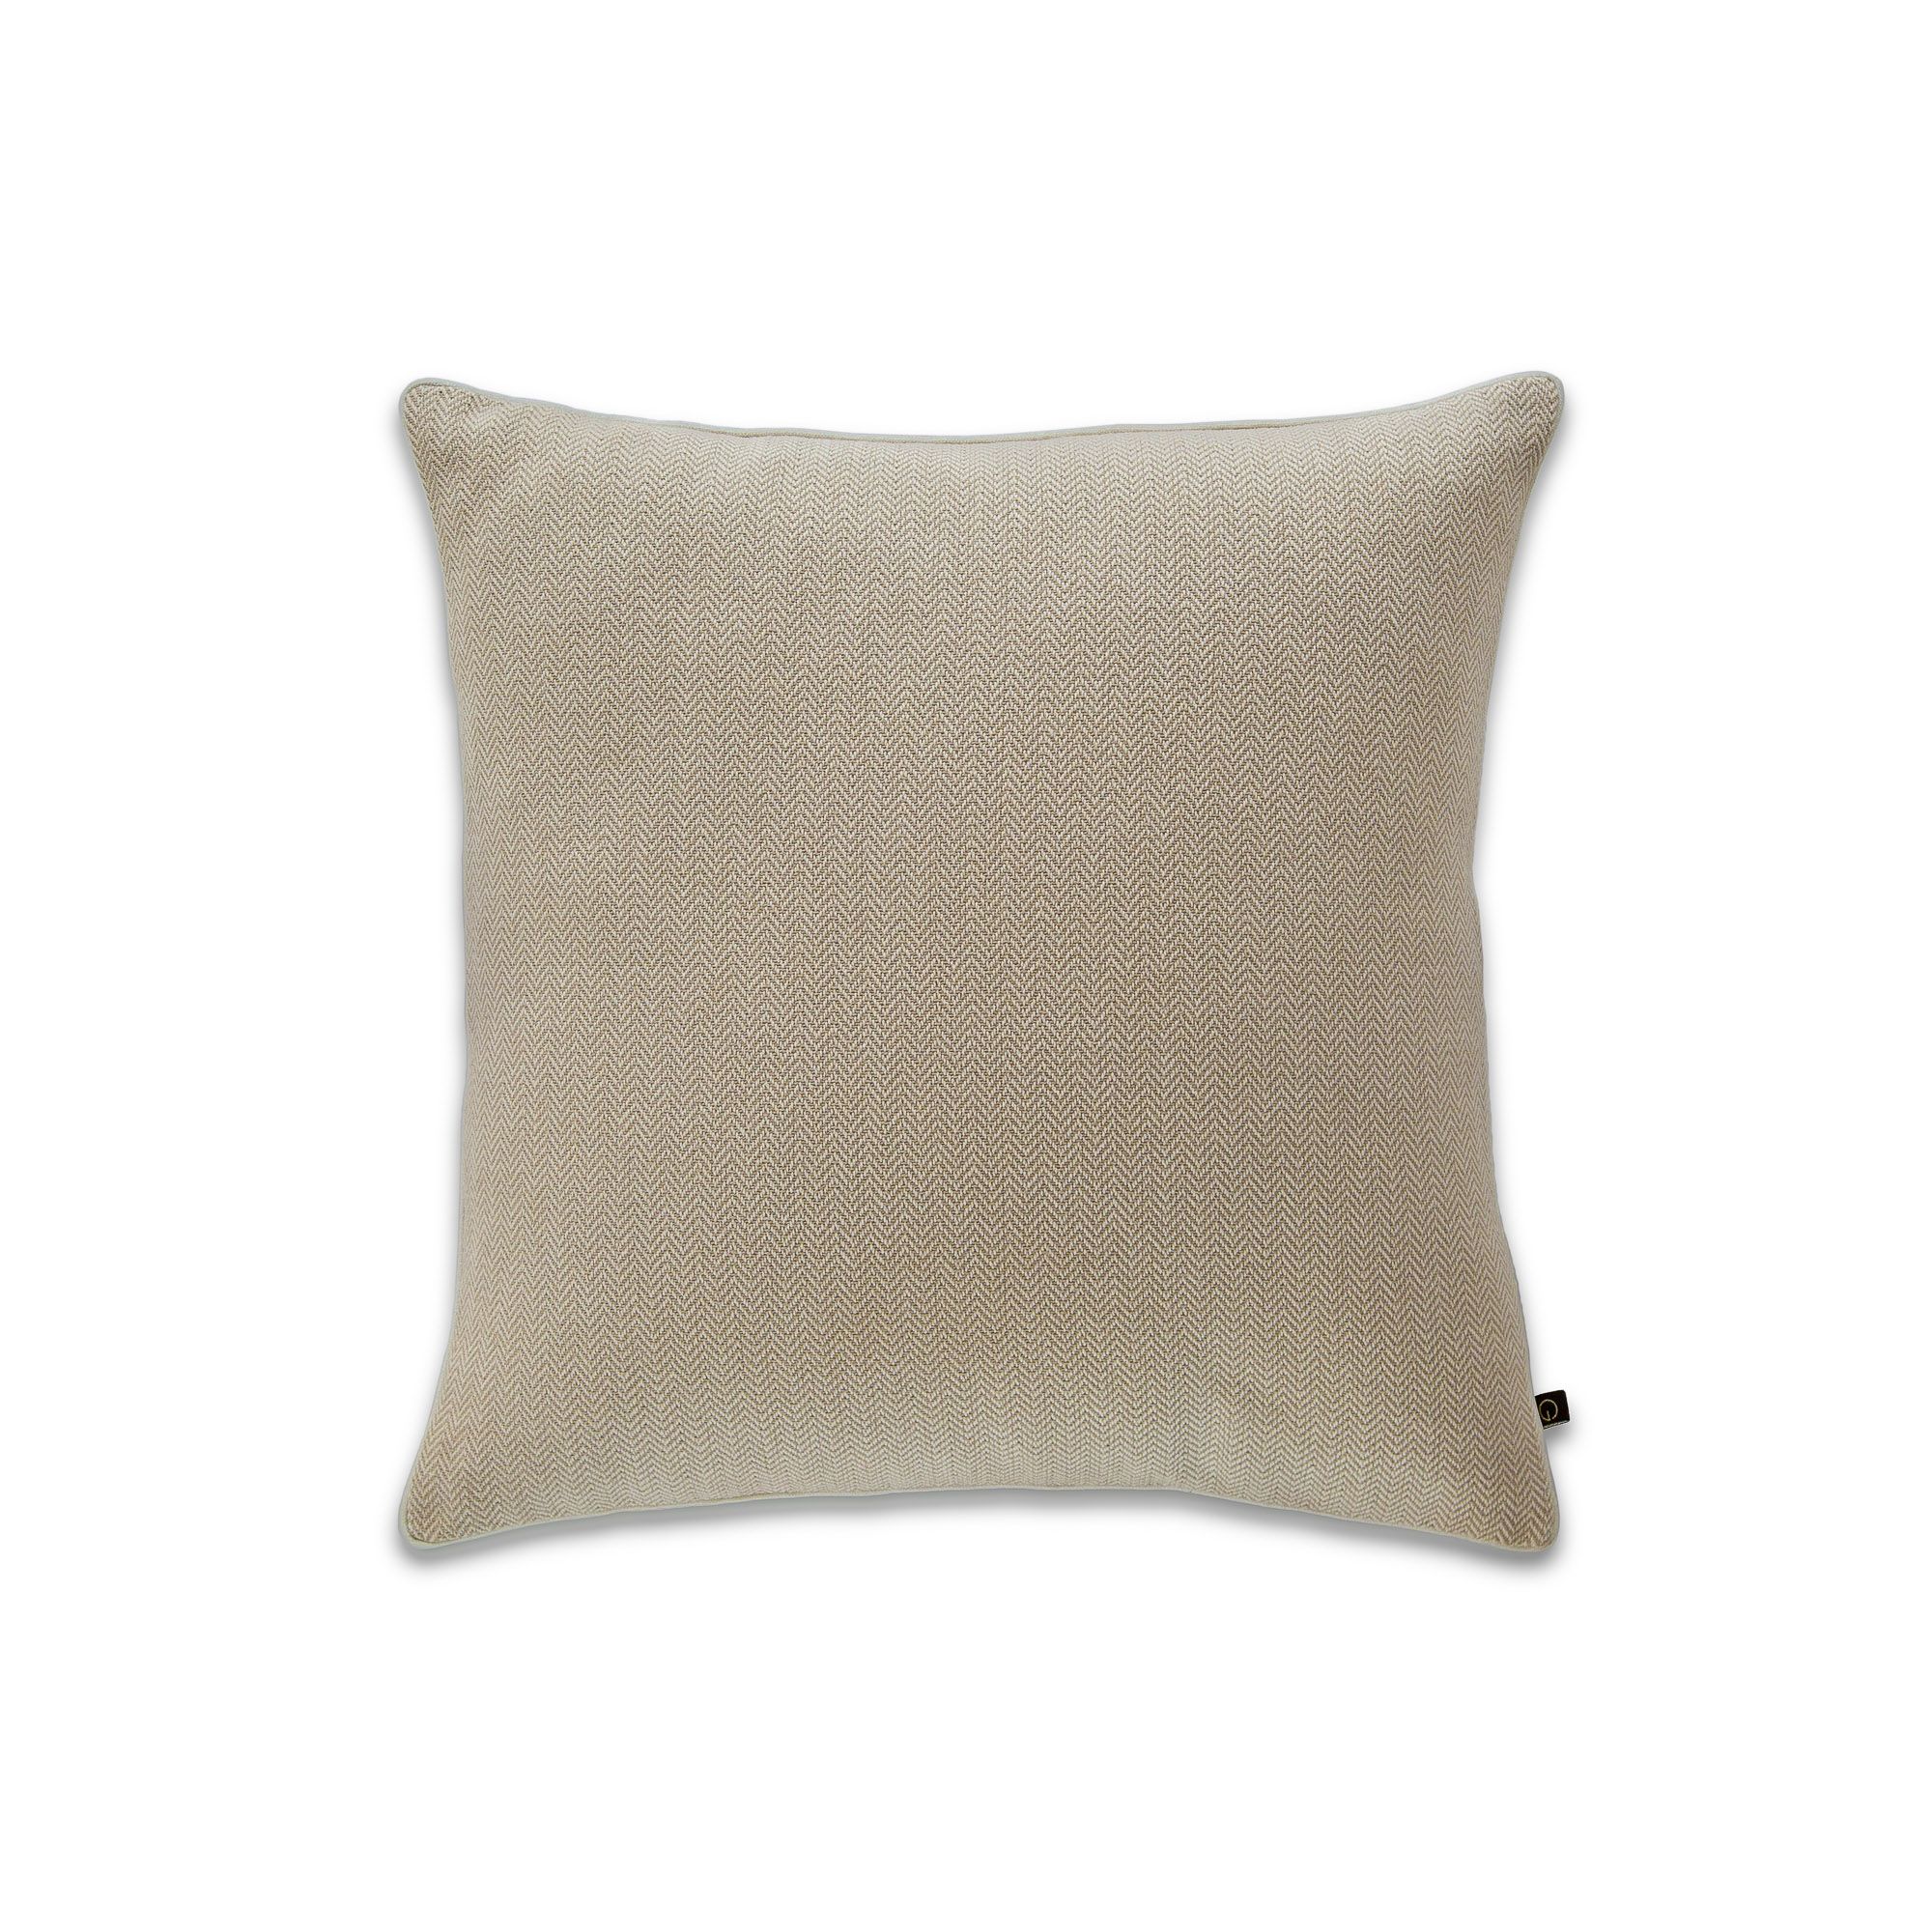 Large Herringbone Pebble 16" x 16" Cushion Cover